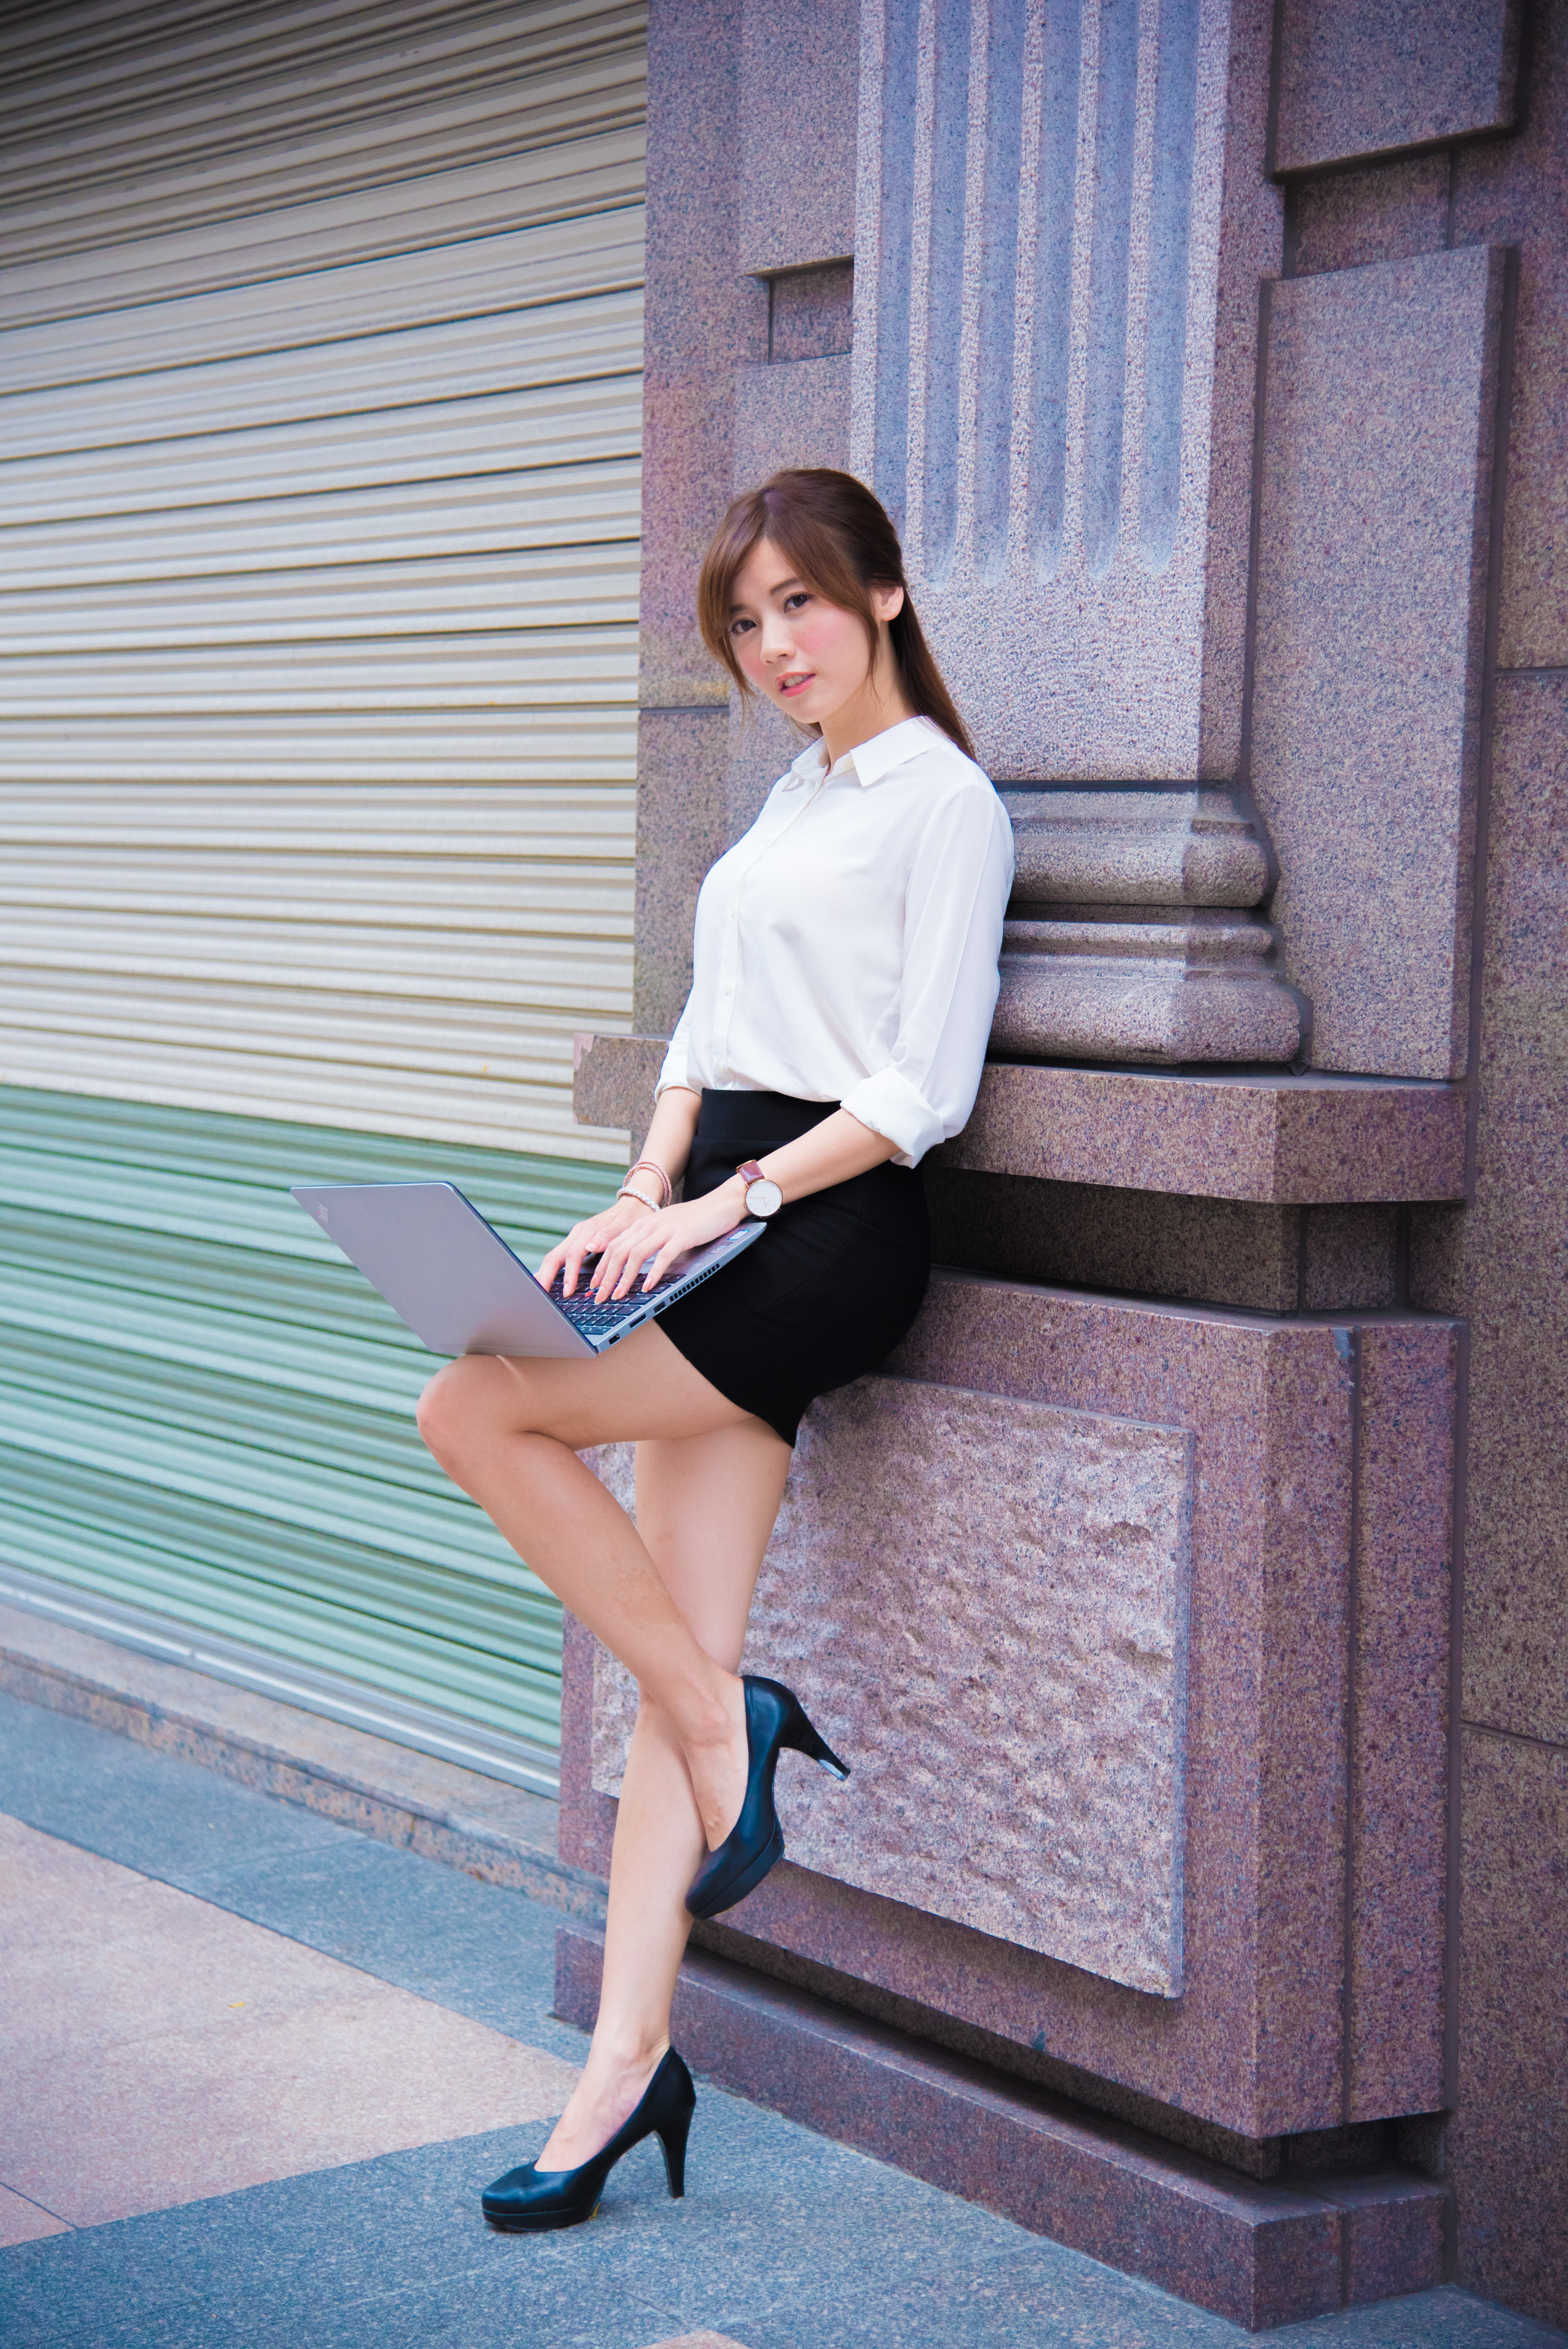 Women Model Asian Brunette Heels Office Uniform Black Skirts White Shirt Office Girl Long Hair 4016x6016